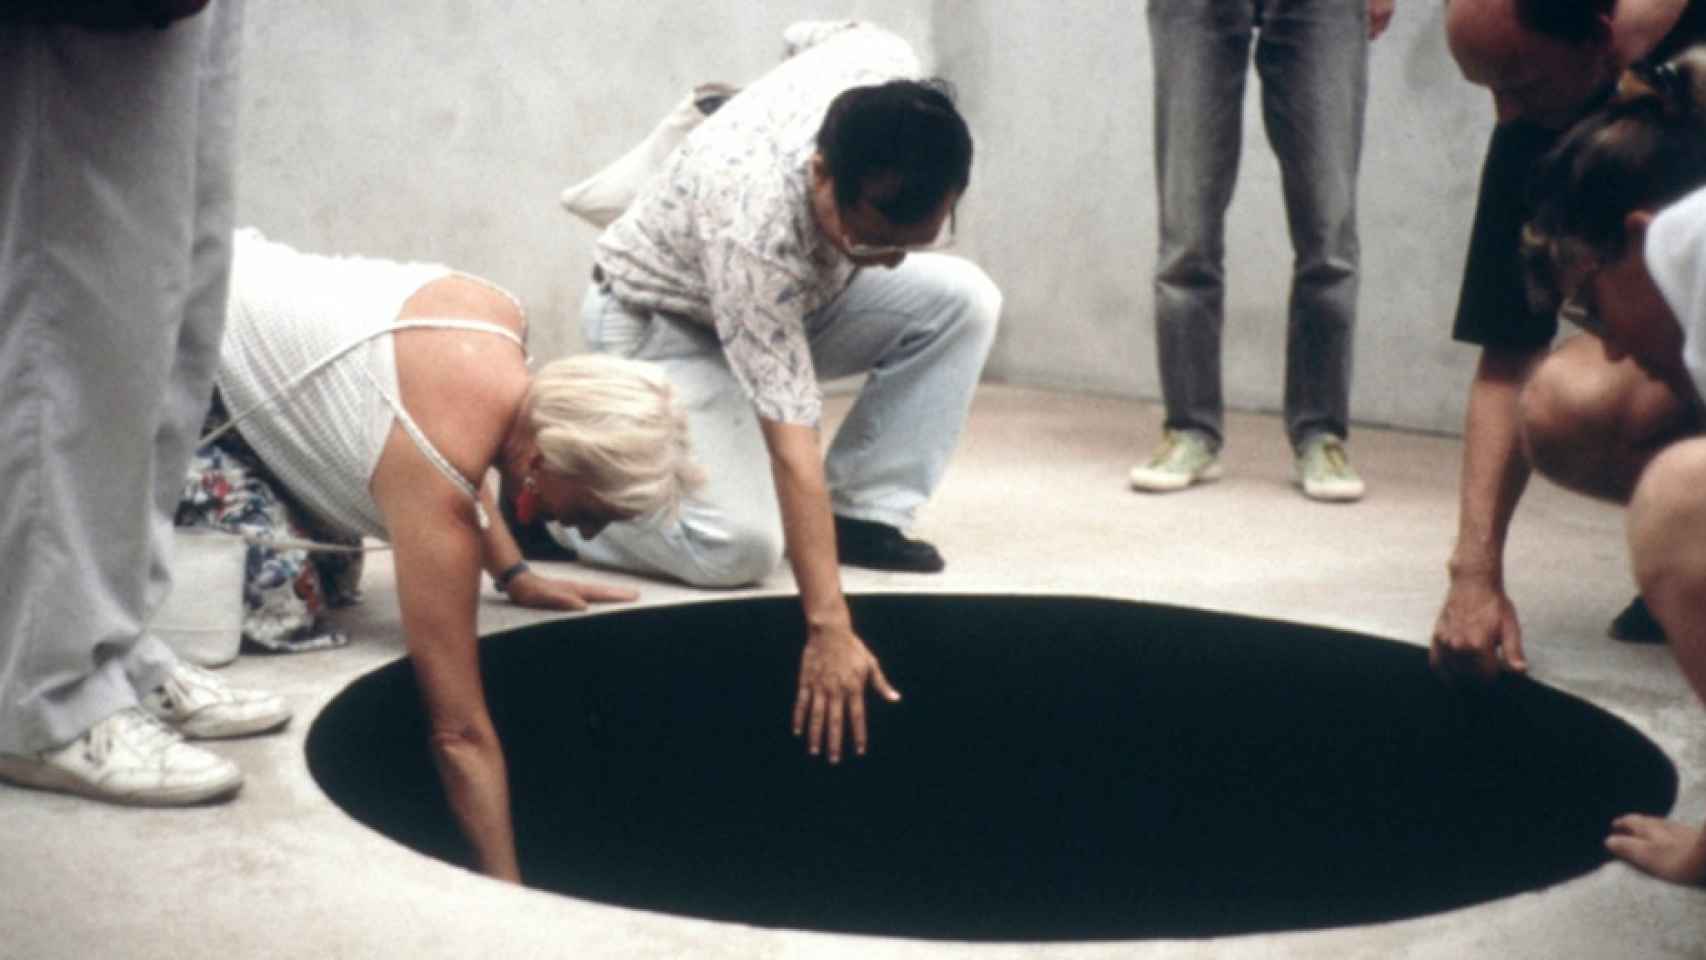 La obra 'Bajada al limbo' de Anish Kapoor en la que un hombre ha caído / FUNDACIÓN SERRALVES